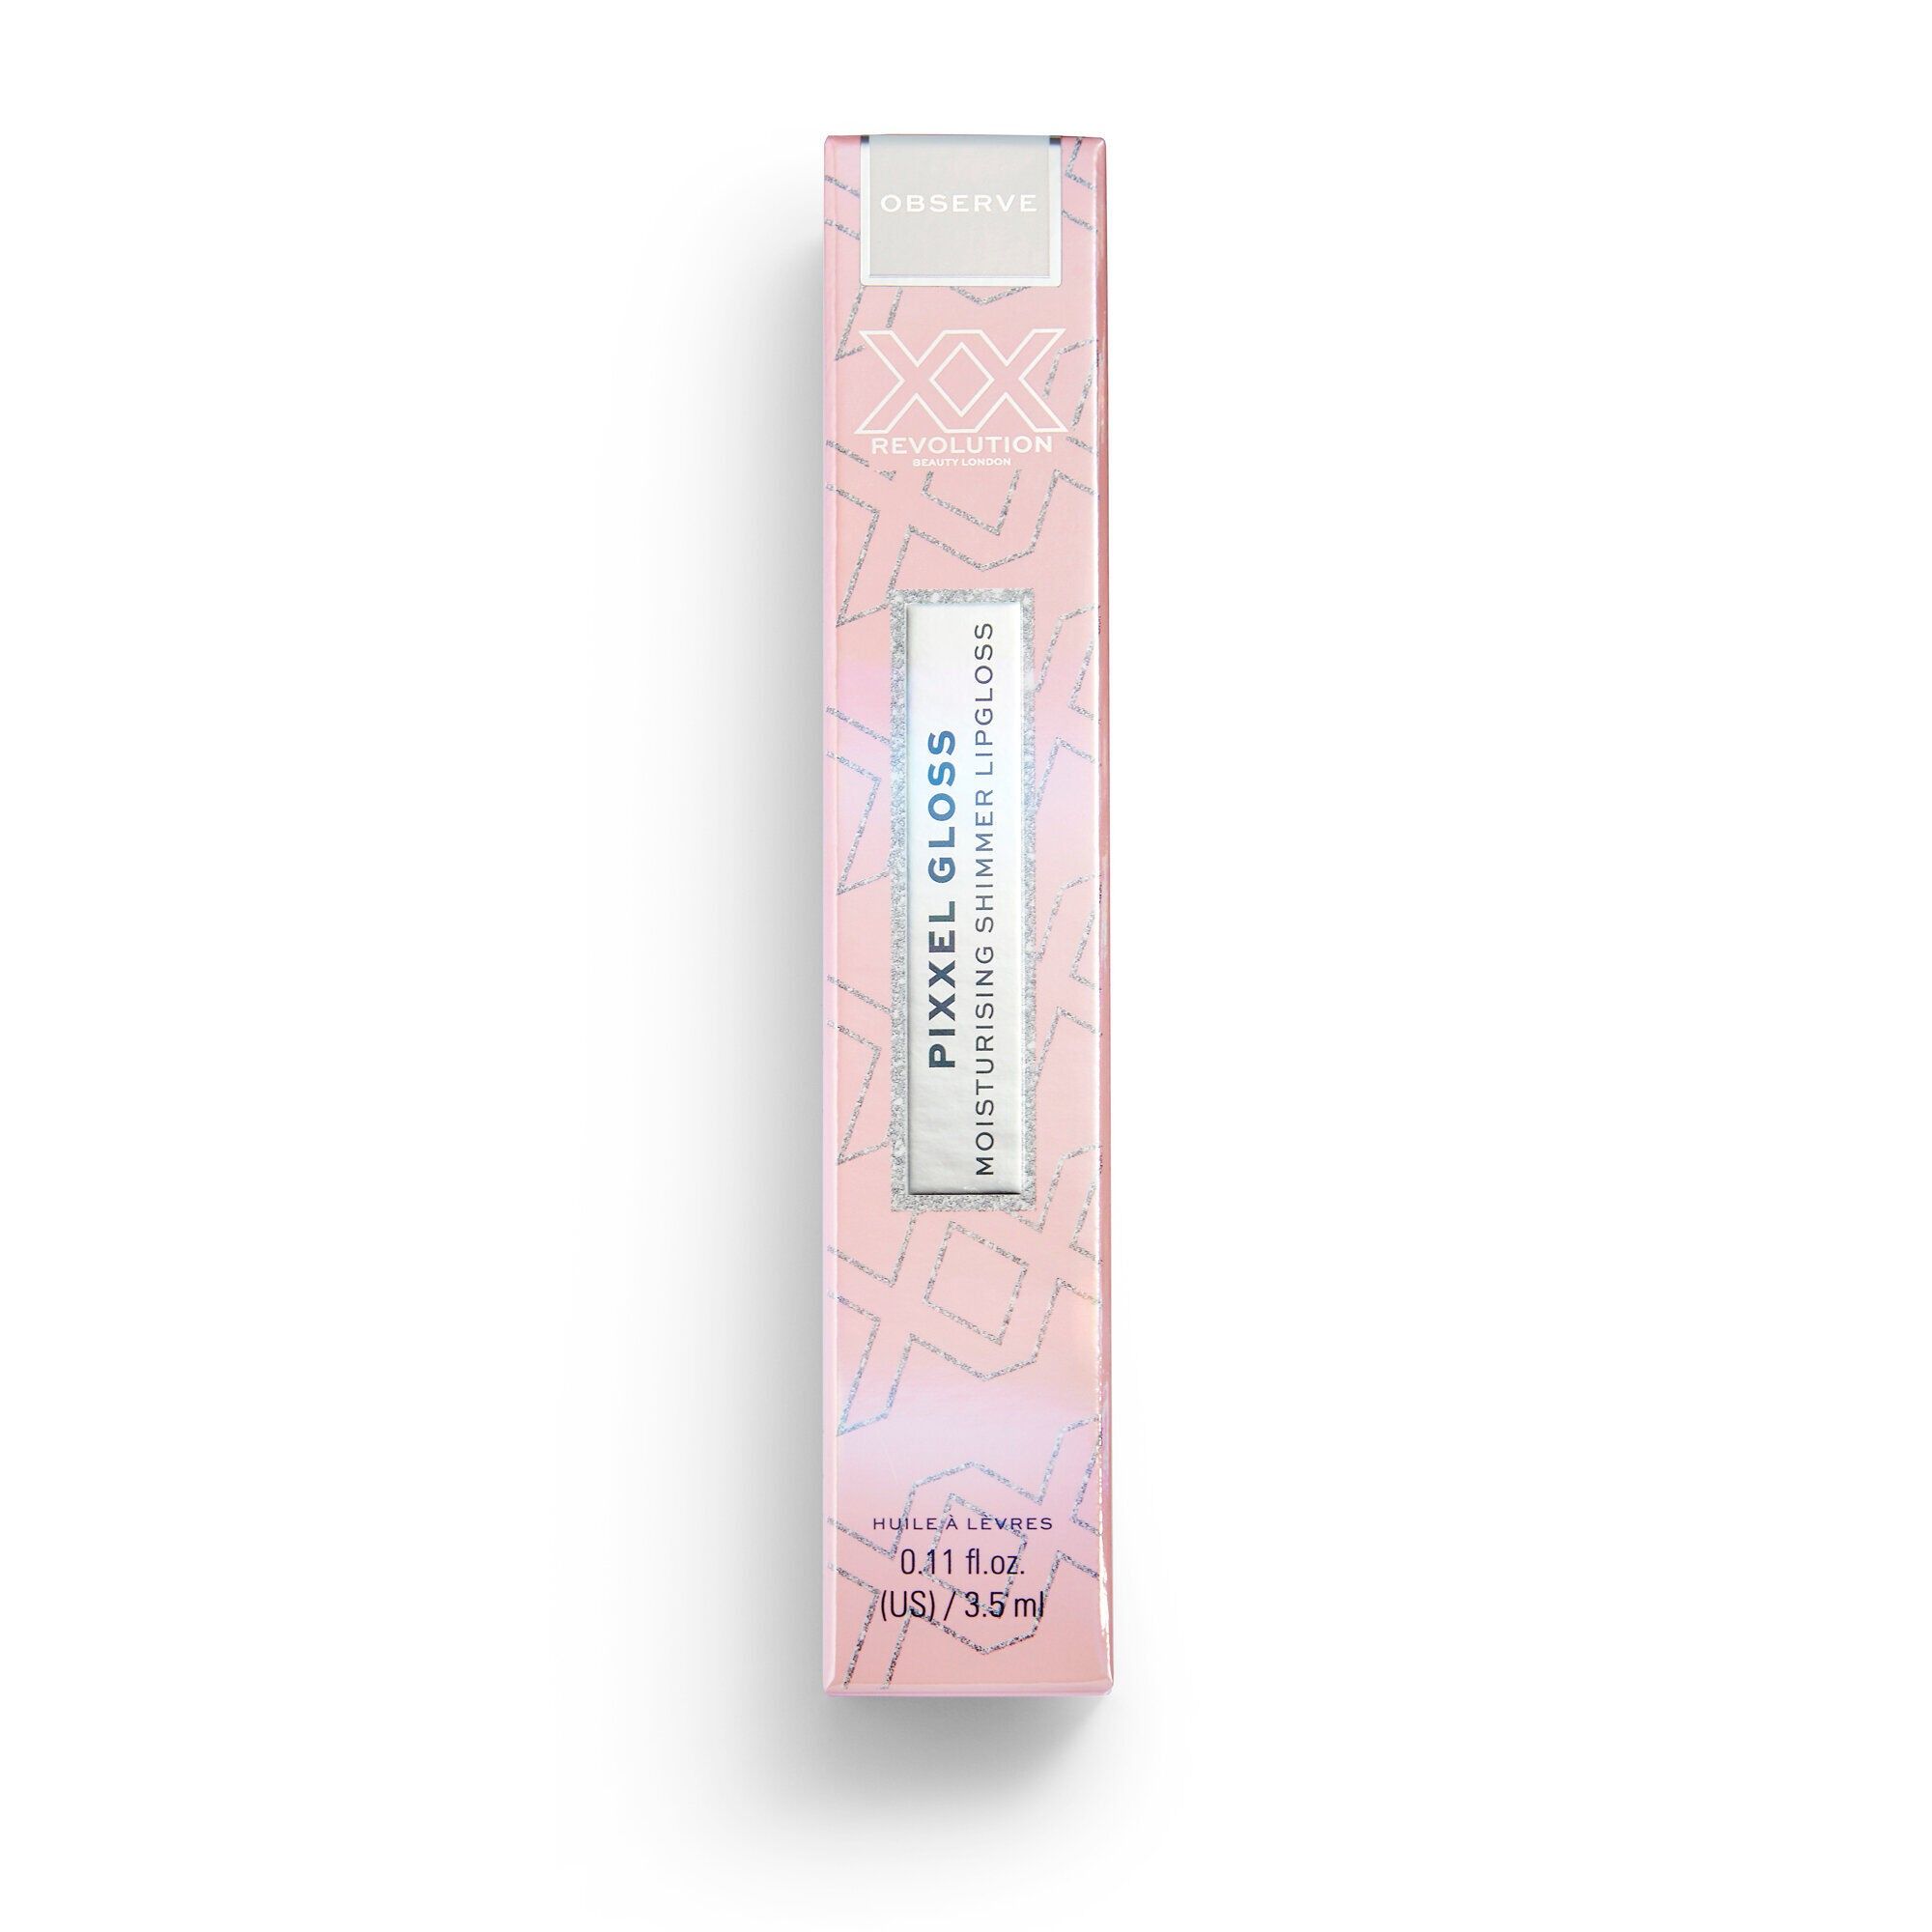 PiXXel Gloss - Moisturising Shimmer Lipgloss